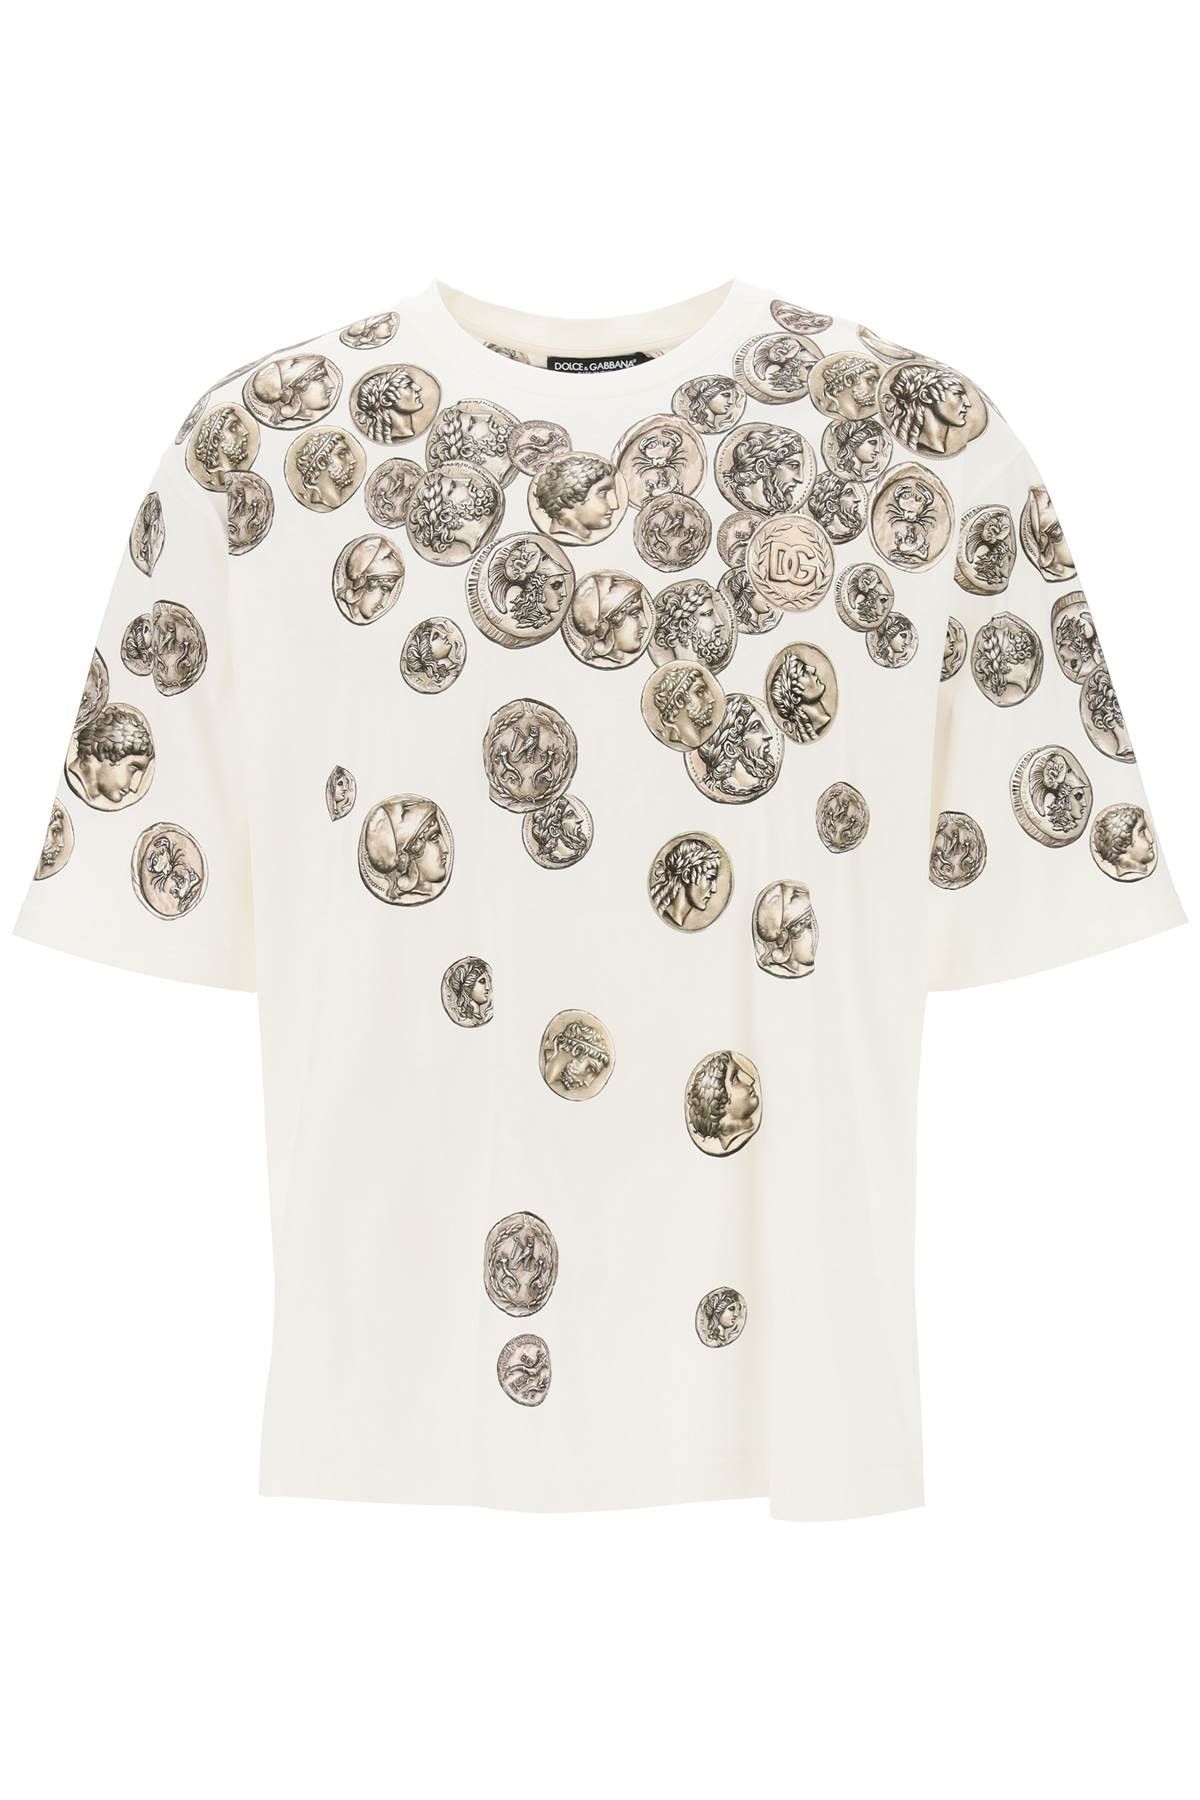 Dolce & Gabbana Dolce & gabbana coins print oversized t-shirt Size S ...